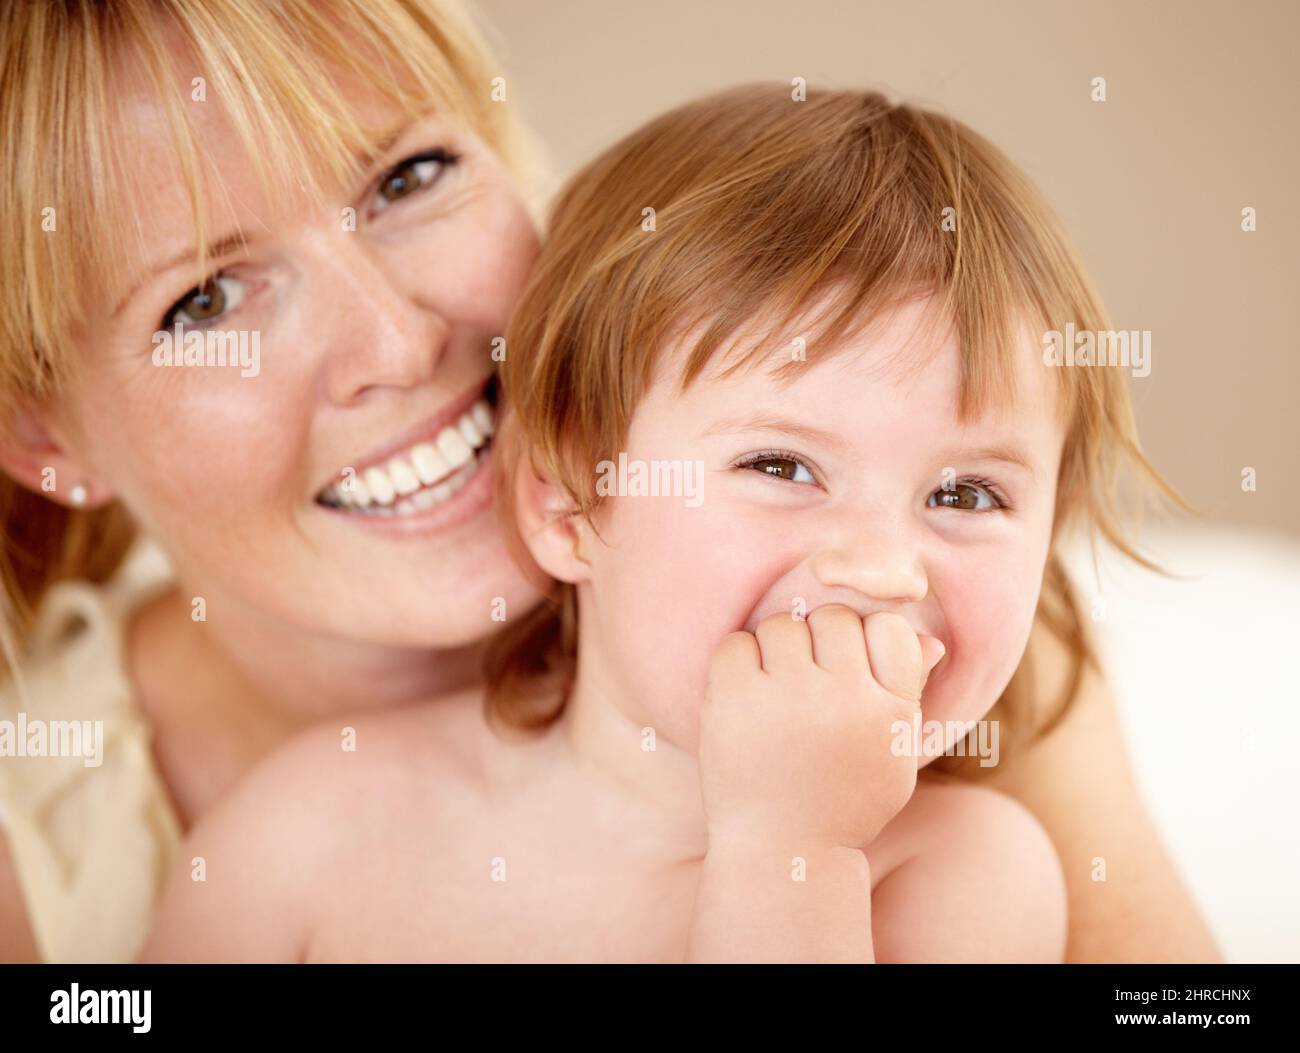 Ama passare il tempo con la mamma. Sorridendo la madre che tiene la sua bambina mentre lei ride con la mano che copre la sua bocca. Foto Stock